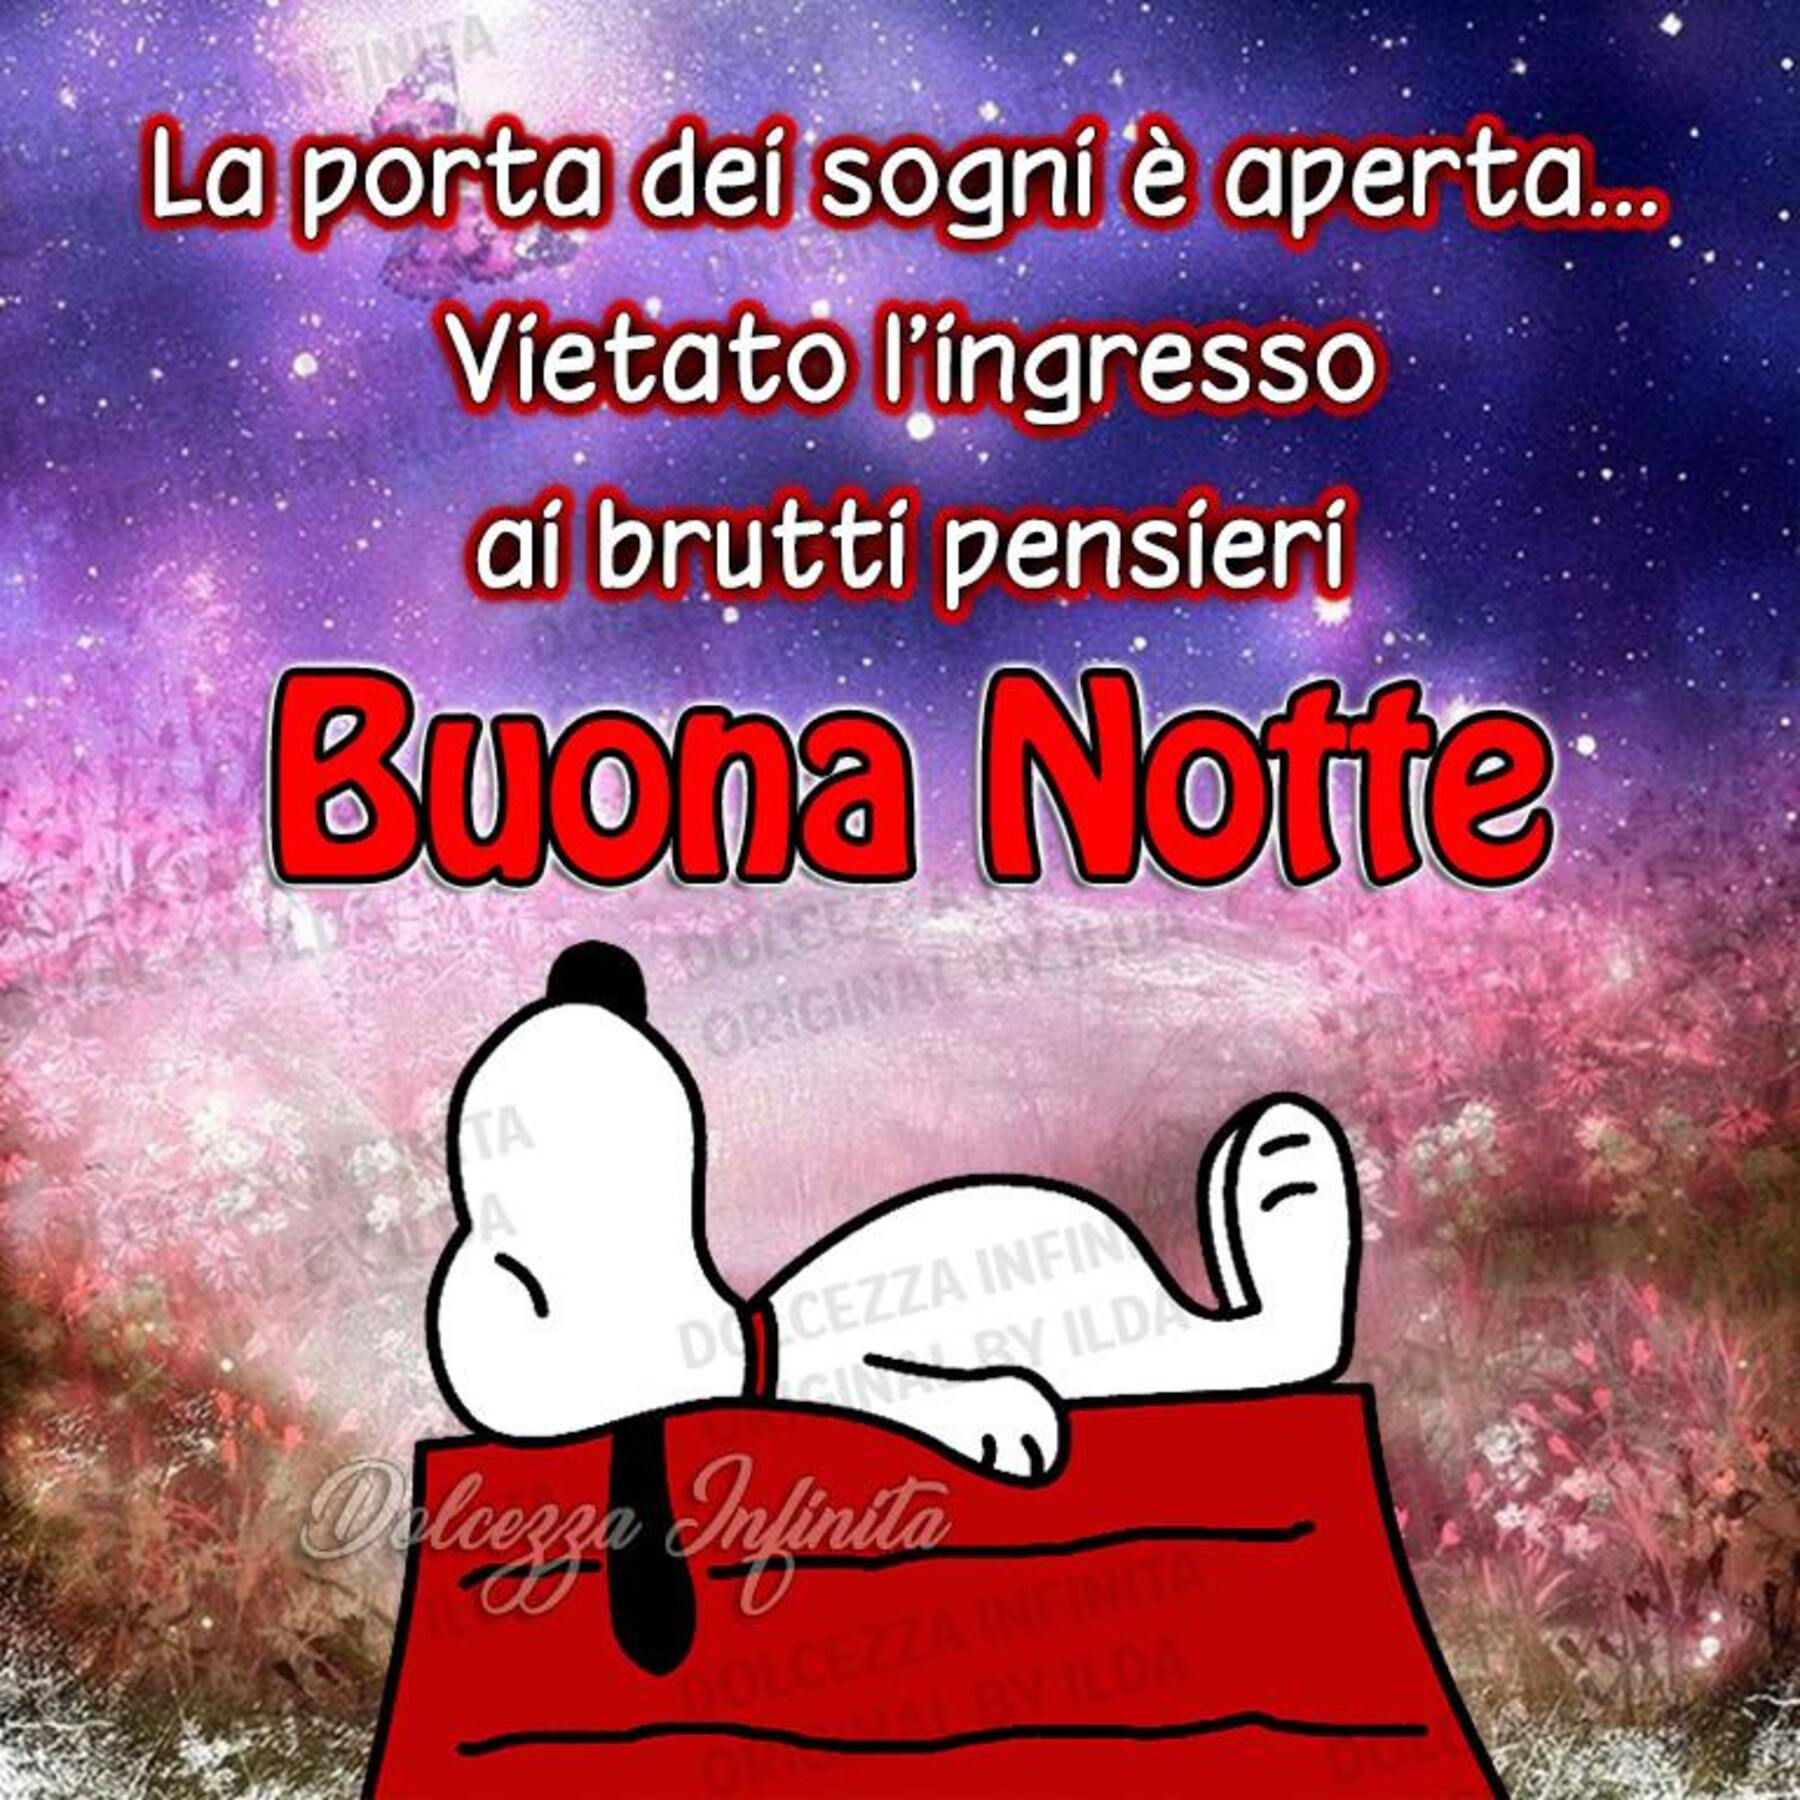 Buonanotte da Snoopy (7)